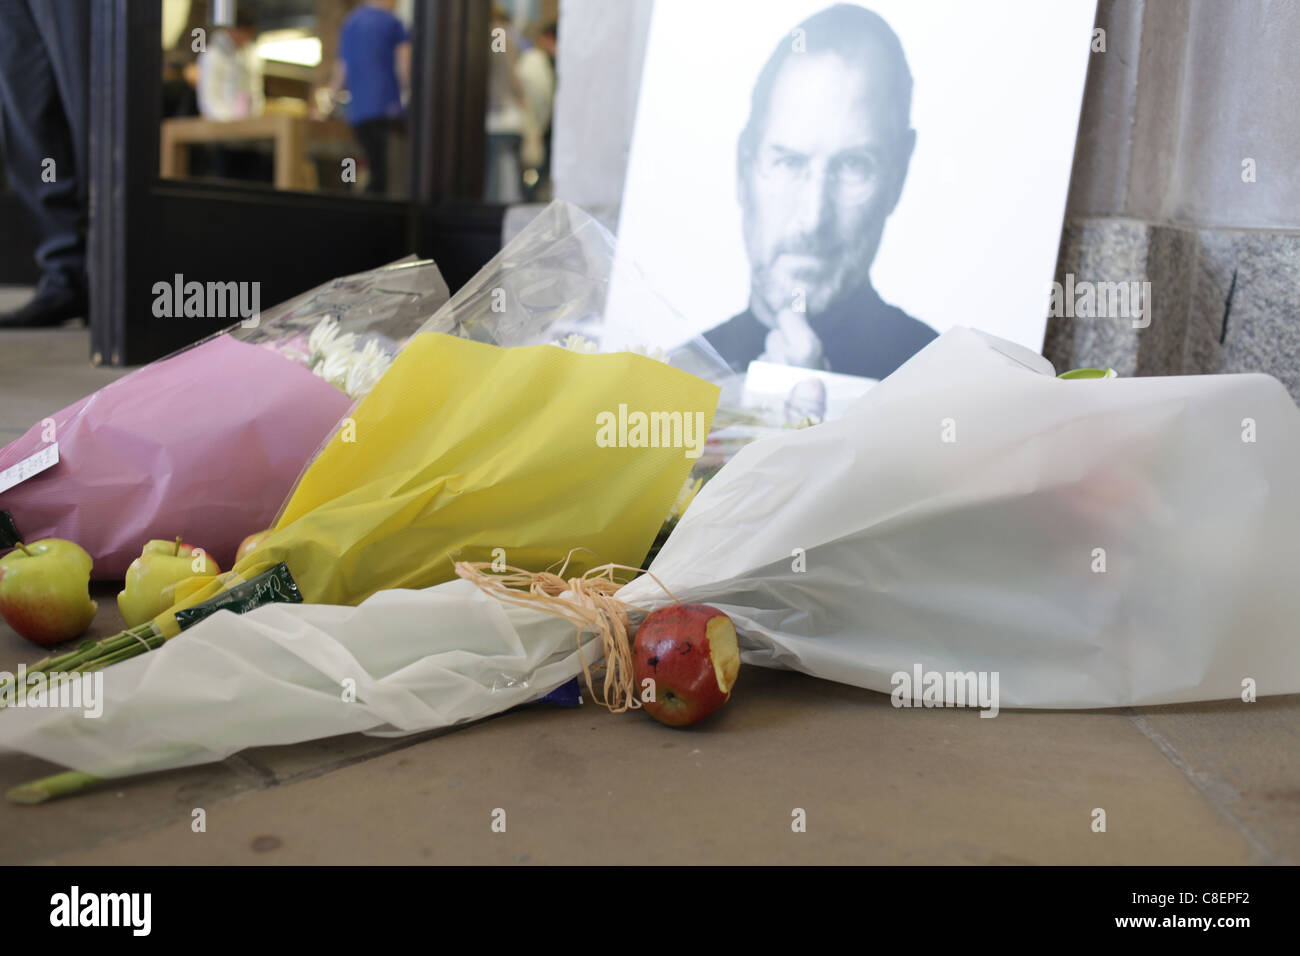 Steve Jobs memorial outside Apple's Covent Garden store in London. Stock Photo